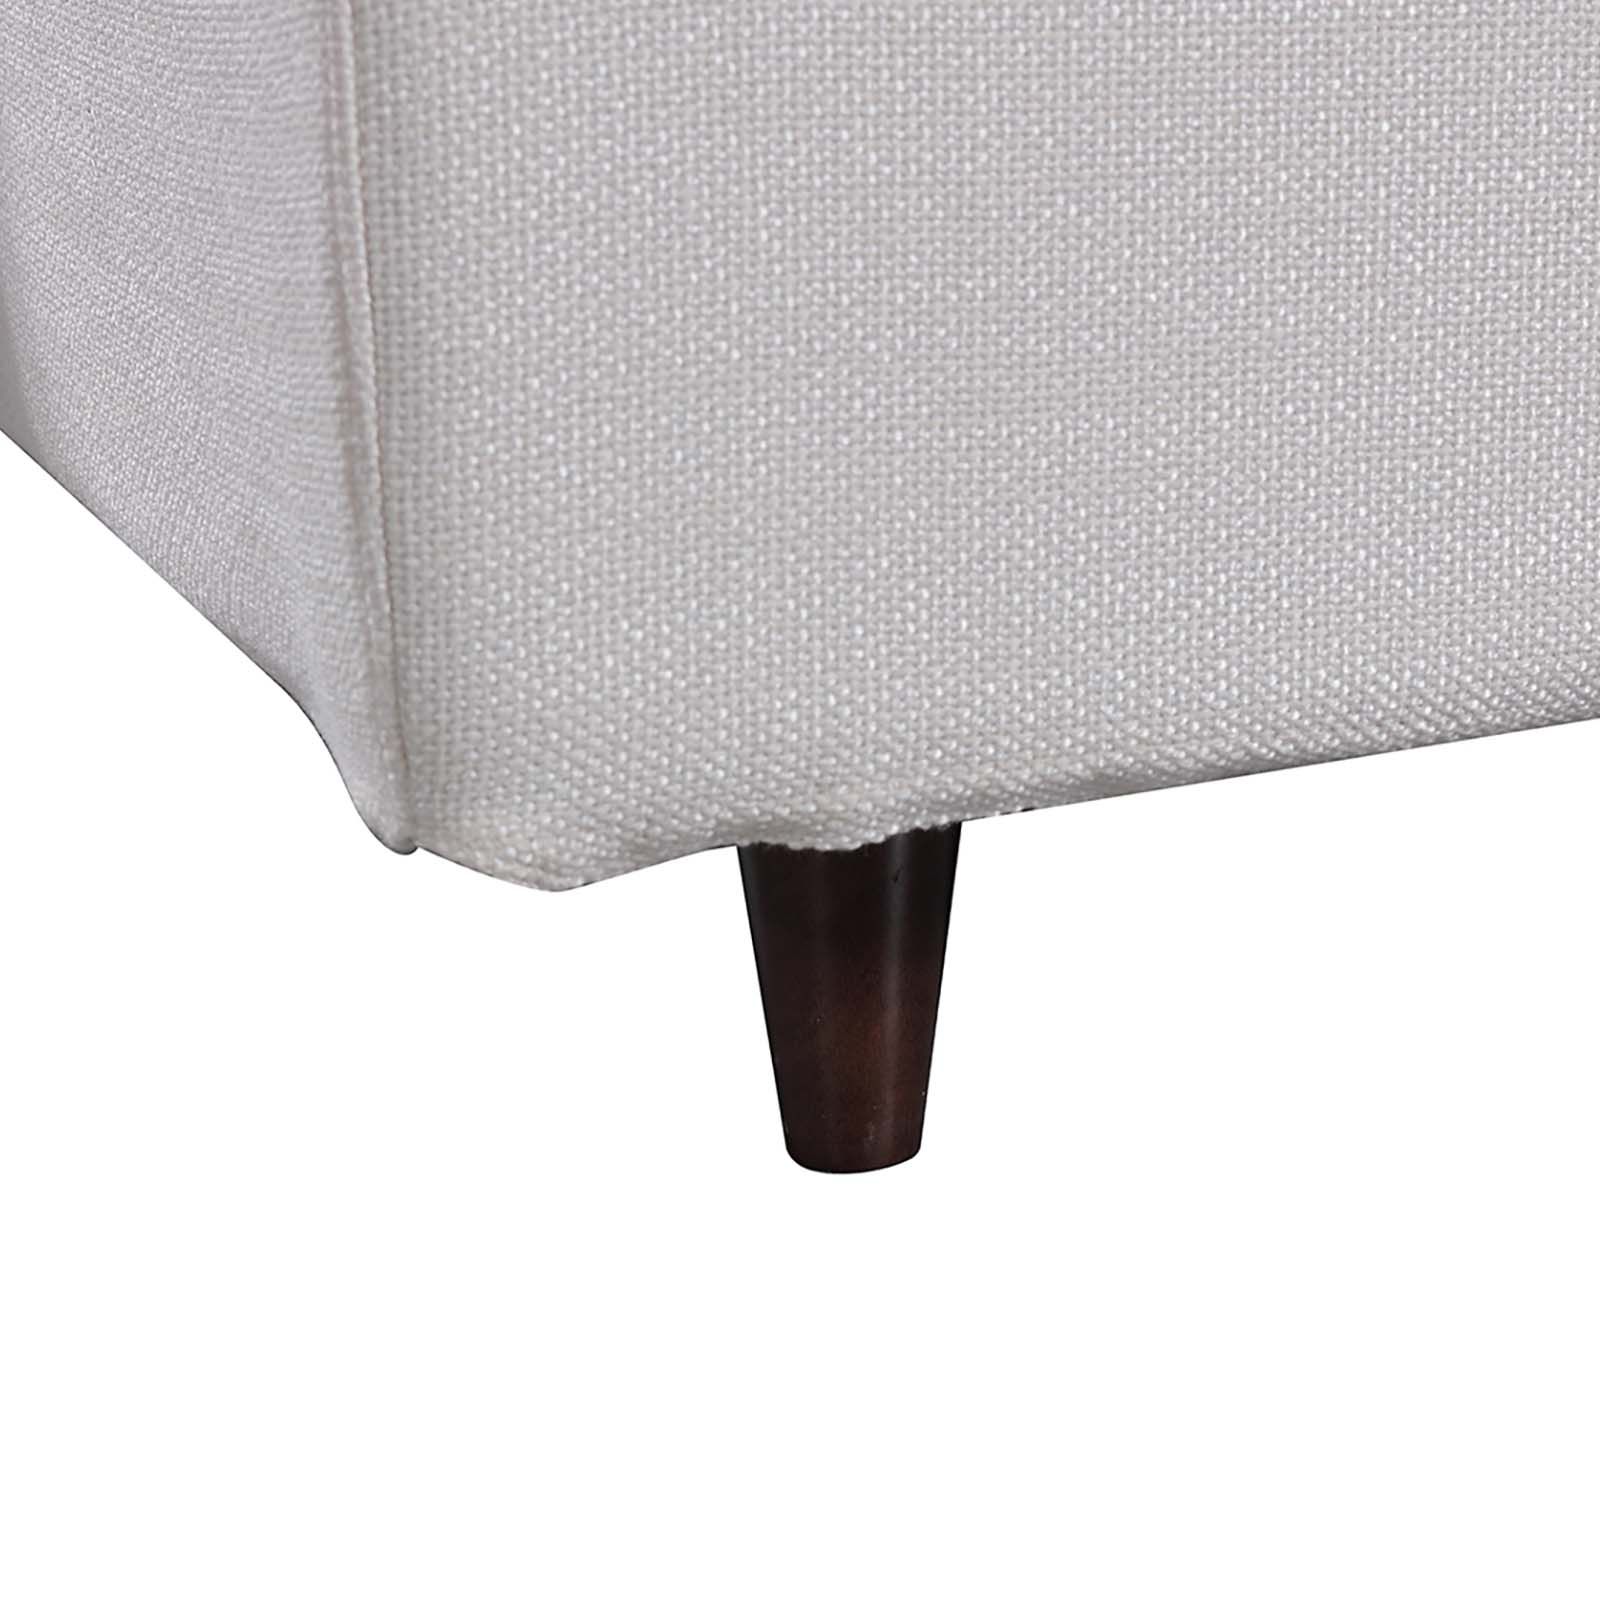 DELFT | Cama tapizada gris perla (150 x 200 cm)